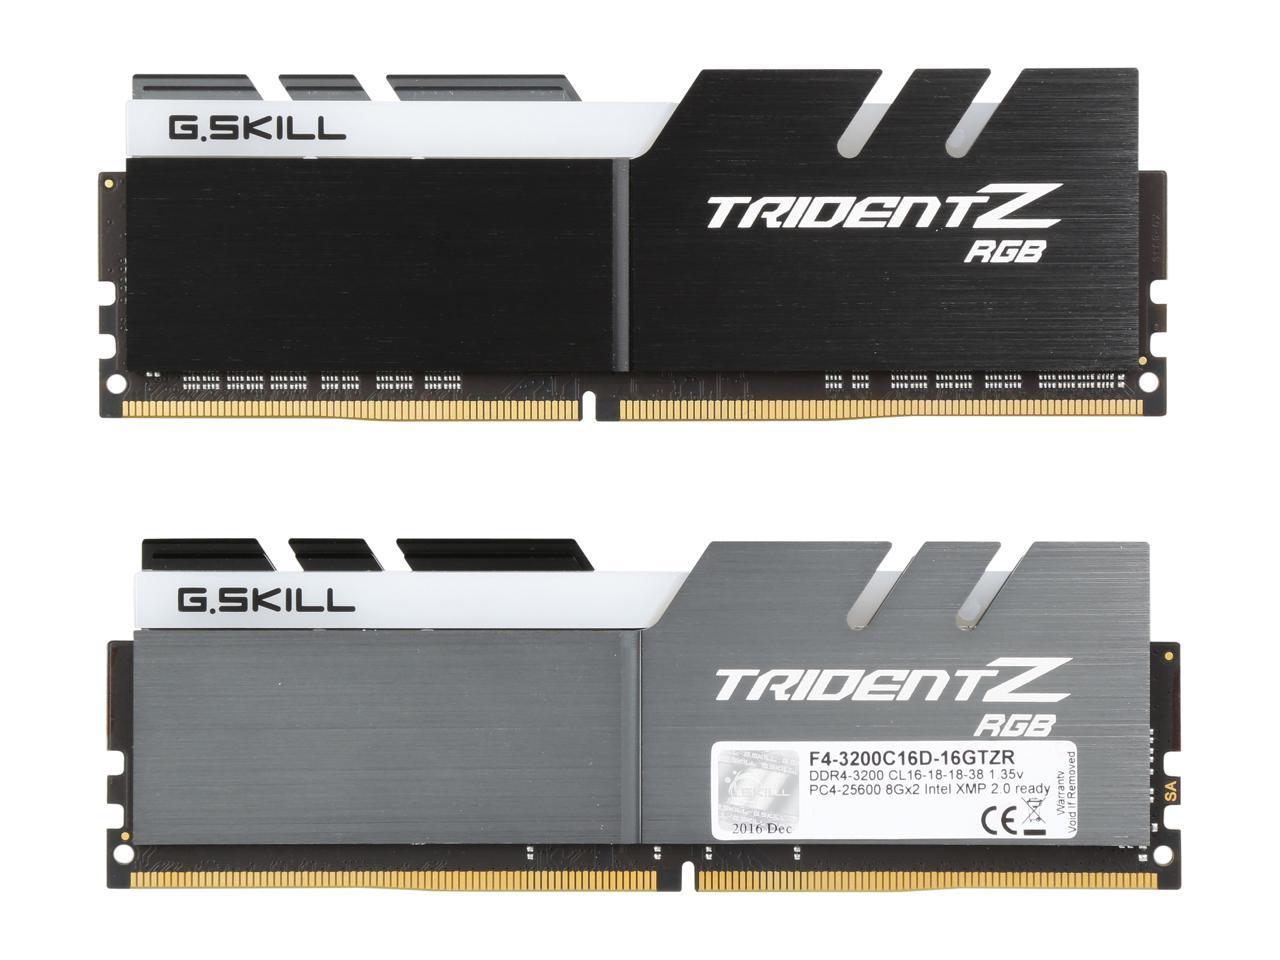 G-SKILL TRIDENT Z RGB 16G(8G*2) 3600MHZ DDR4